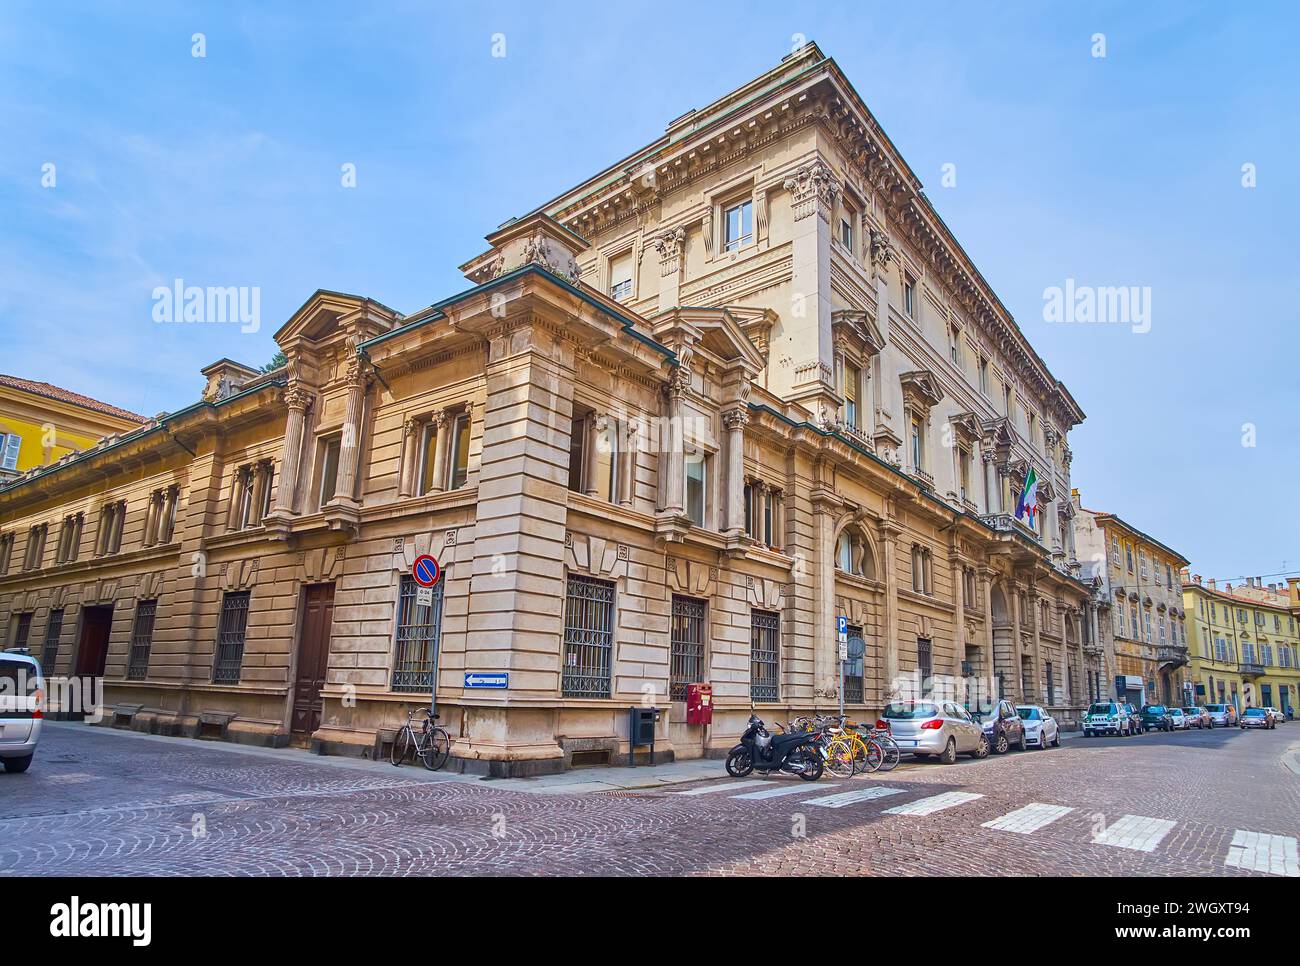 The beautiful building of Palazzo della Provincia on Corso Giuseppe Garibaldi in Piacenza, Italy Stock Photo